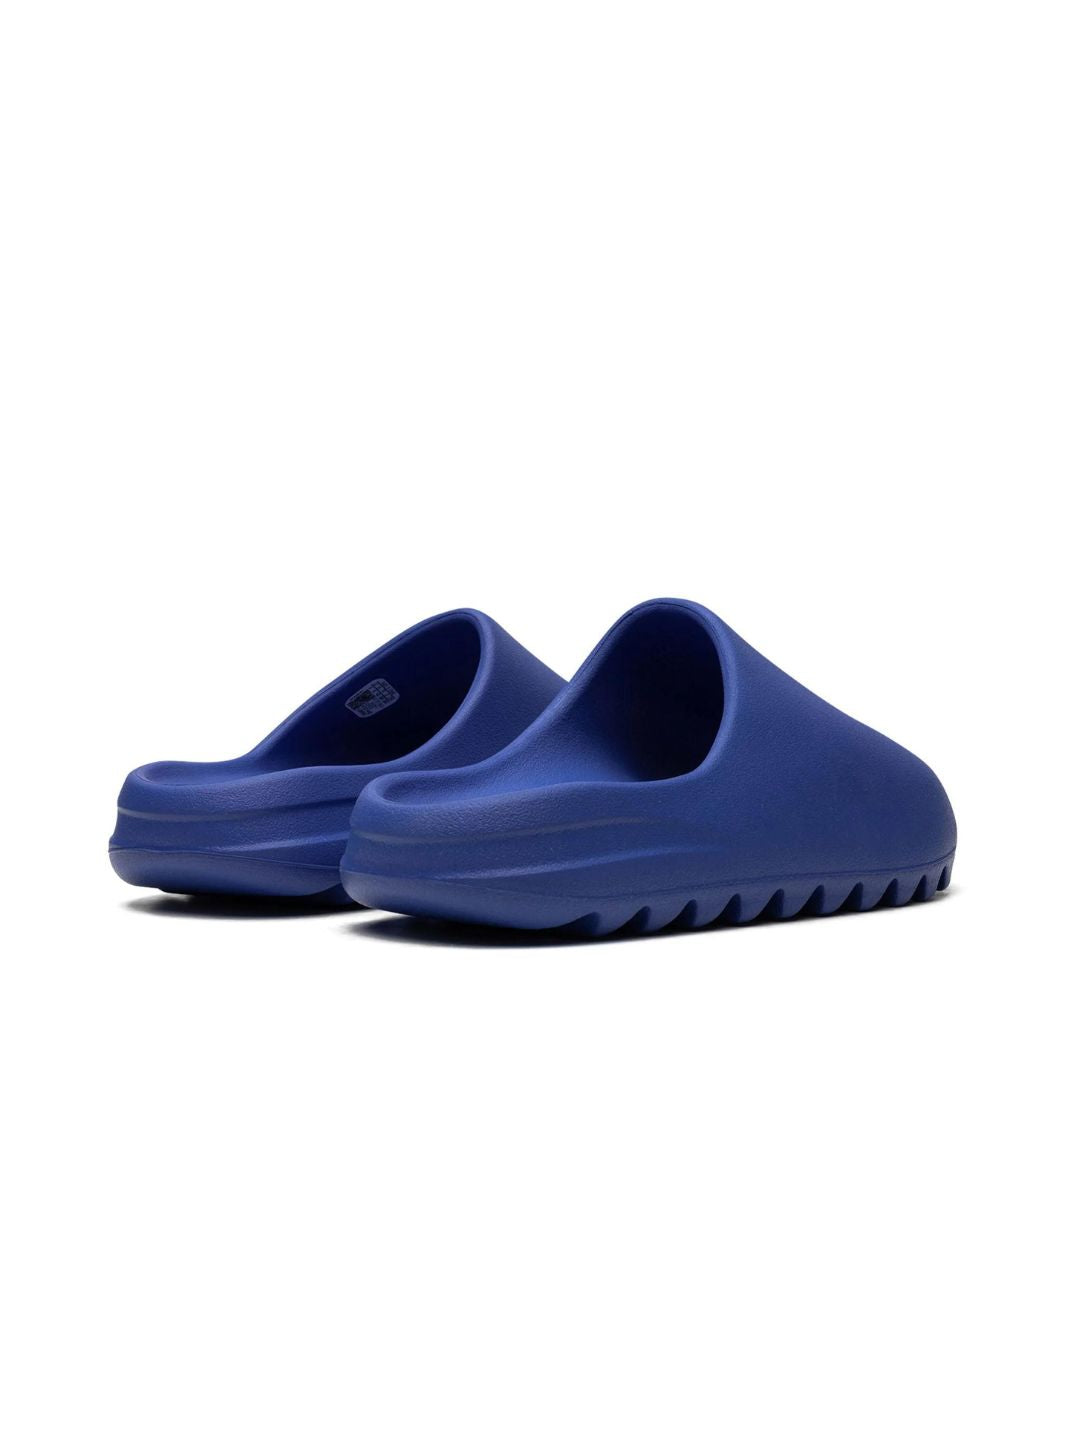 Adidas Yeezy Slide Azure - ID4133 | ResellZone